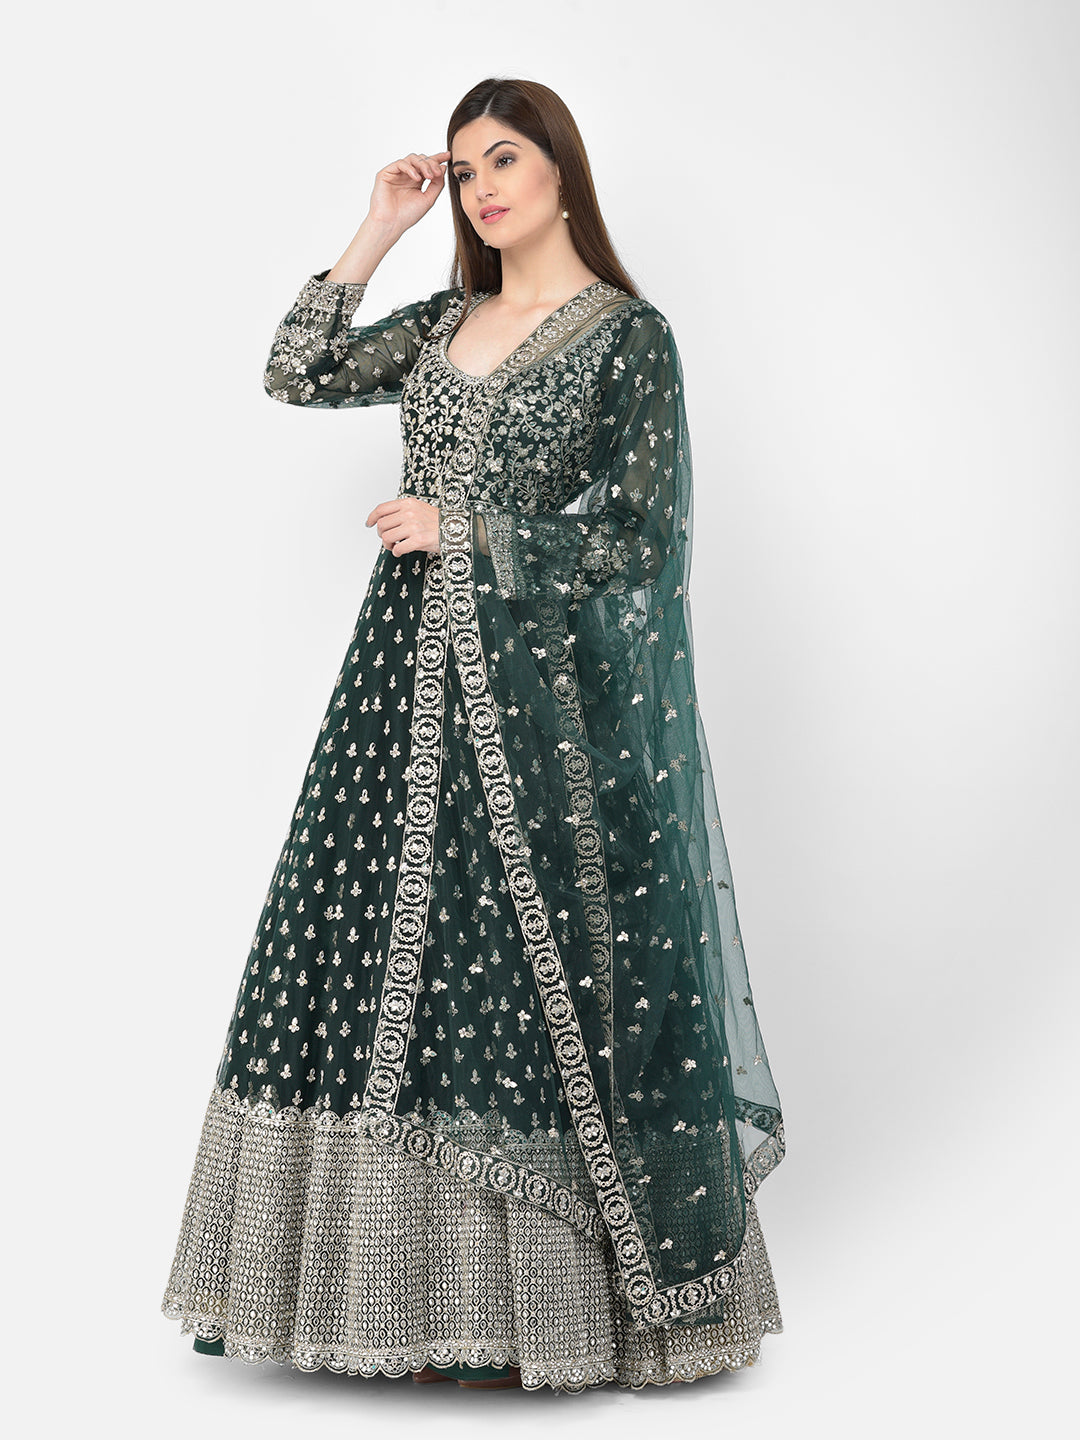 Neeru's Bottle Green Color Nett Fabric Suit-Anarkali